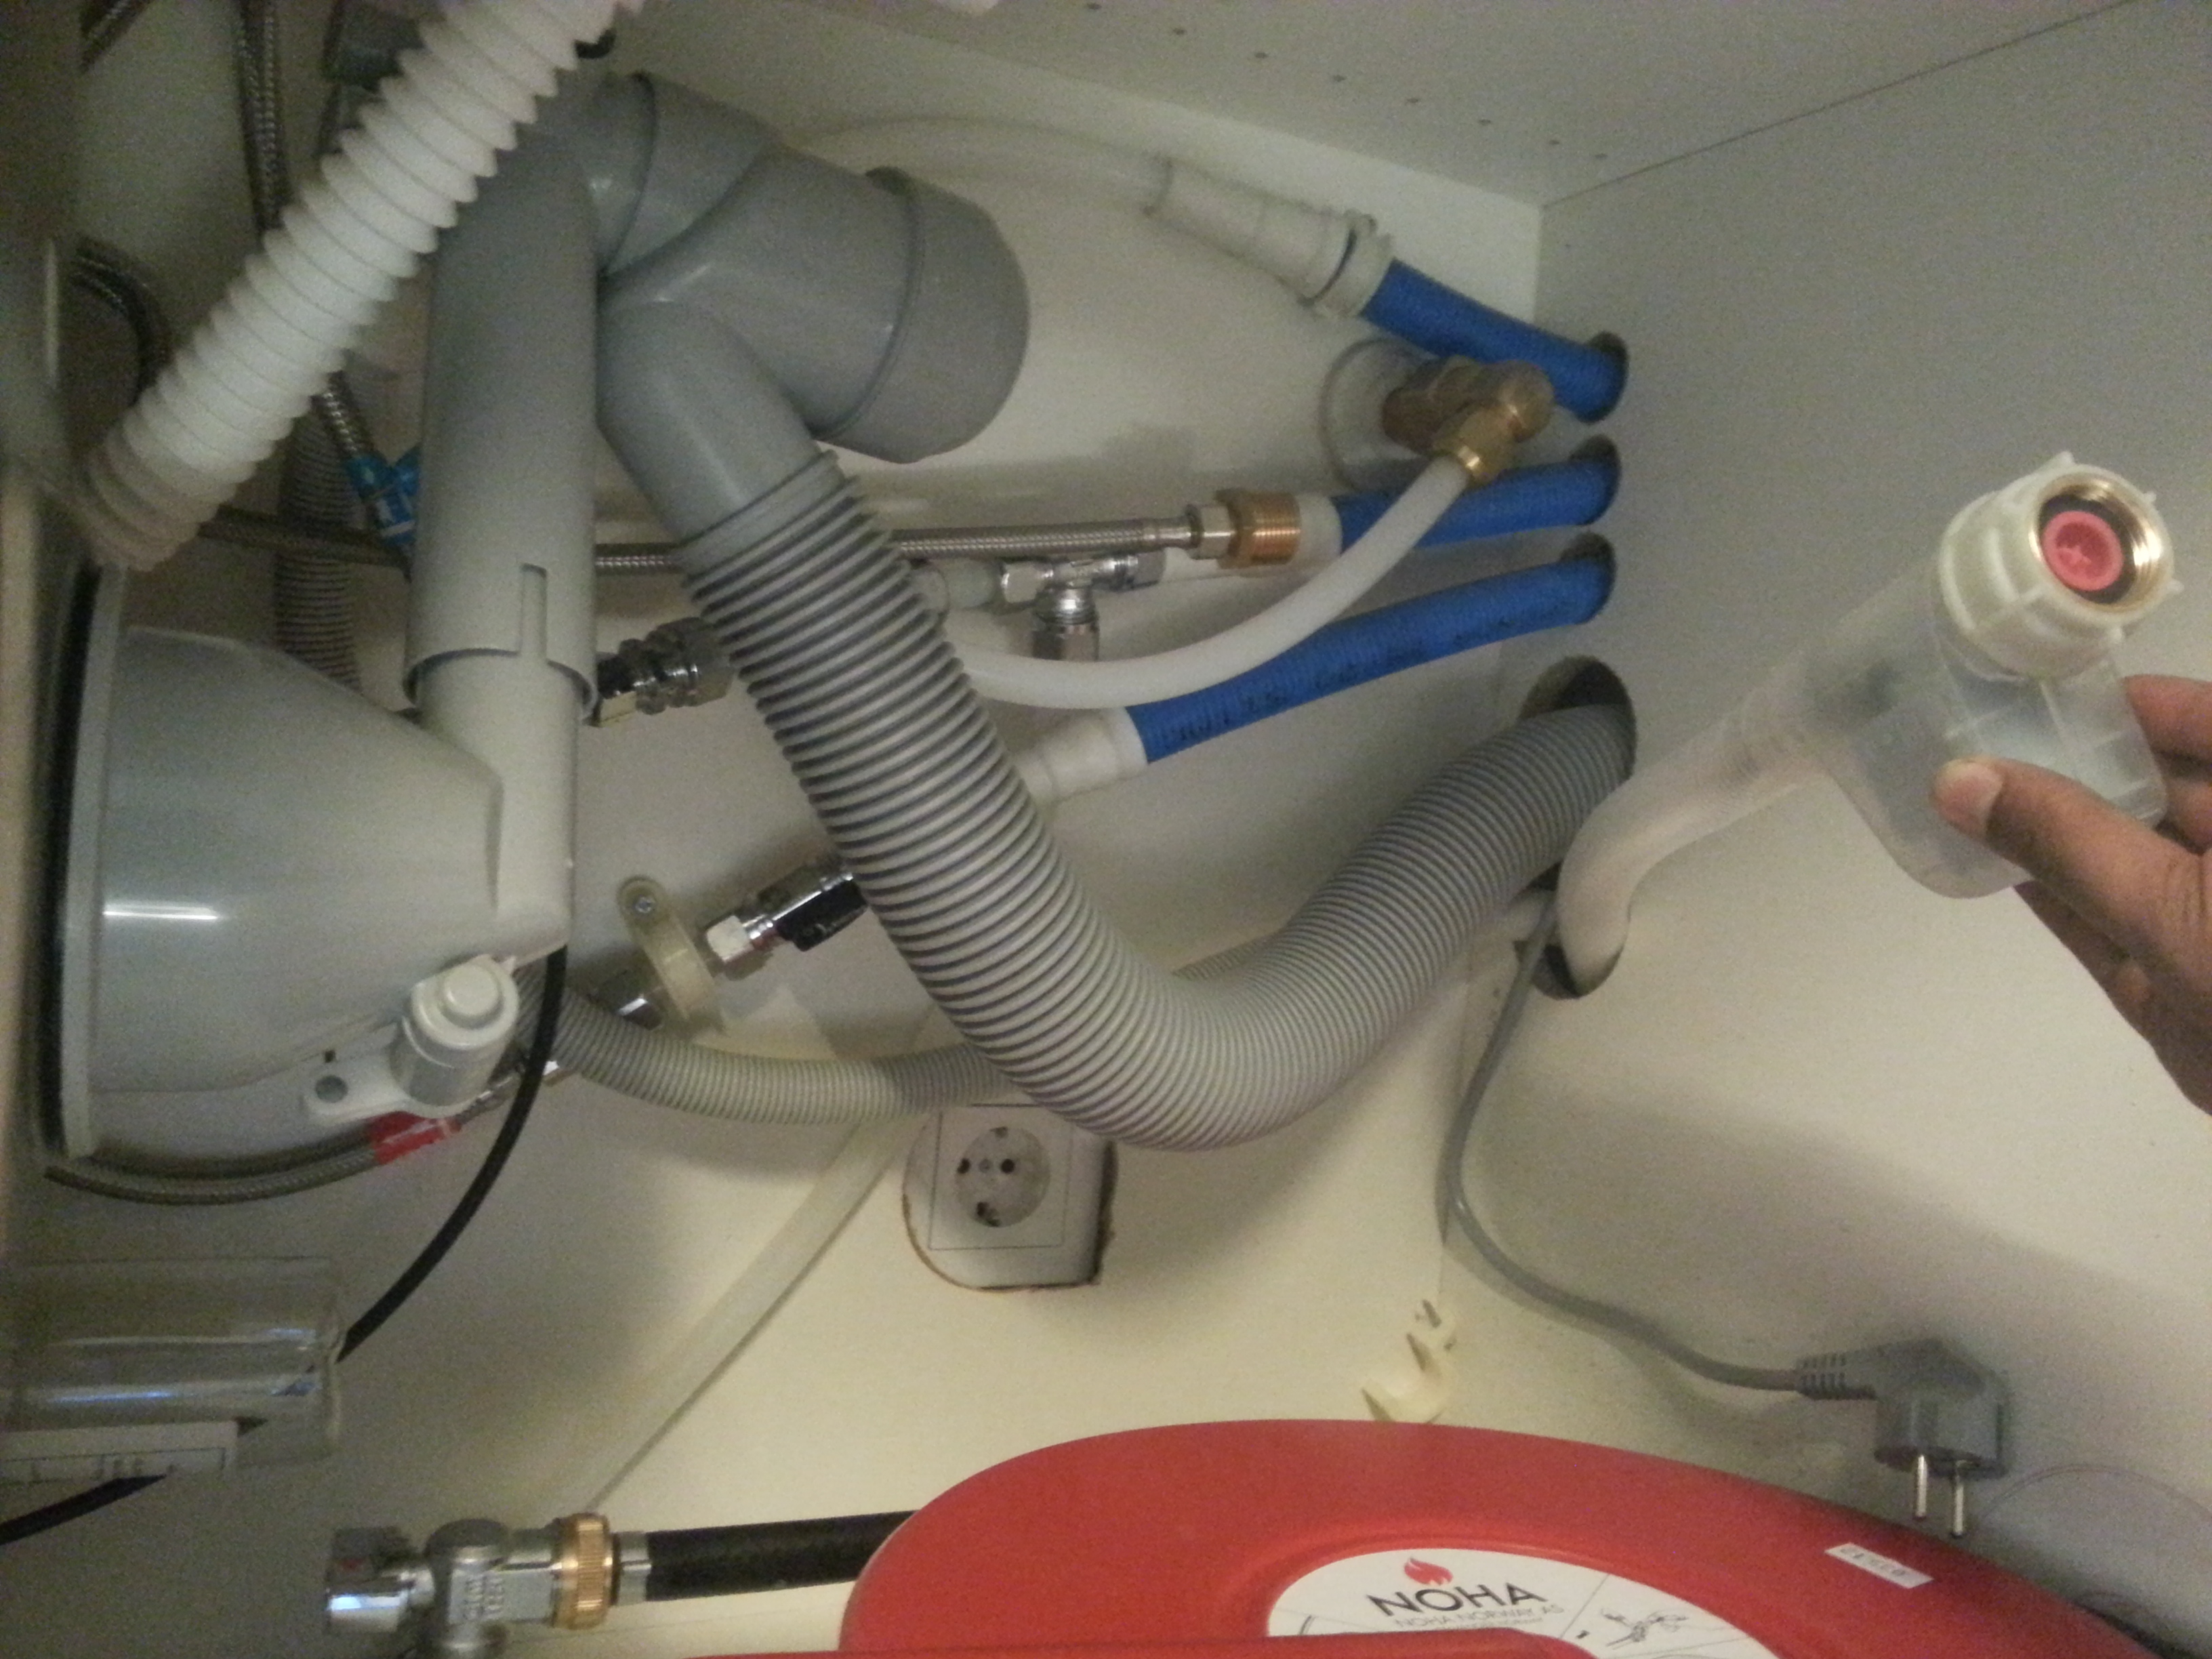 Er det et krav om lekasjestopper ved installering av oppvaskmaskin - 20121217_132539.jpg - rawls